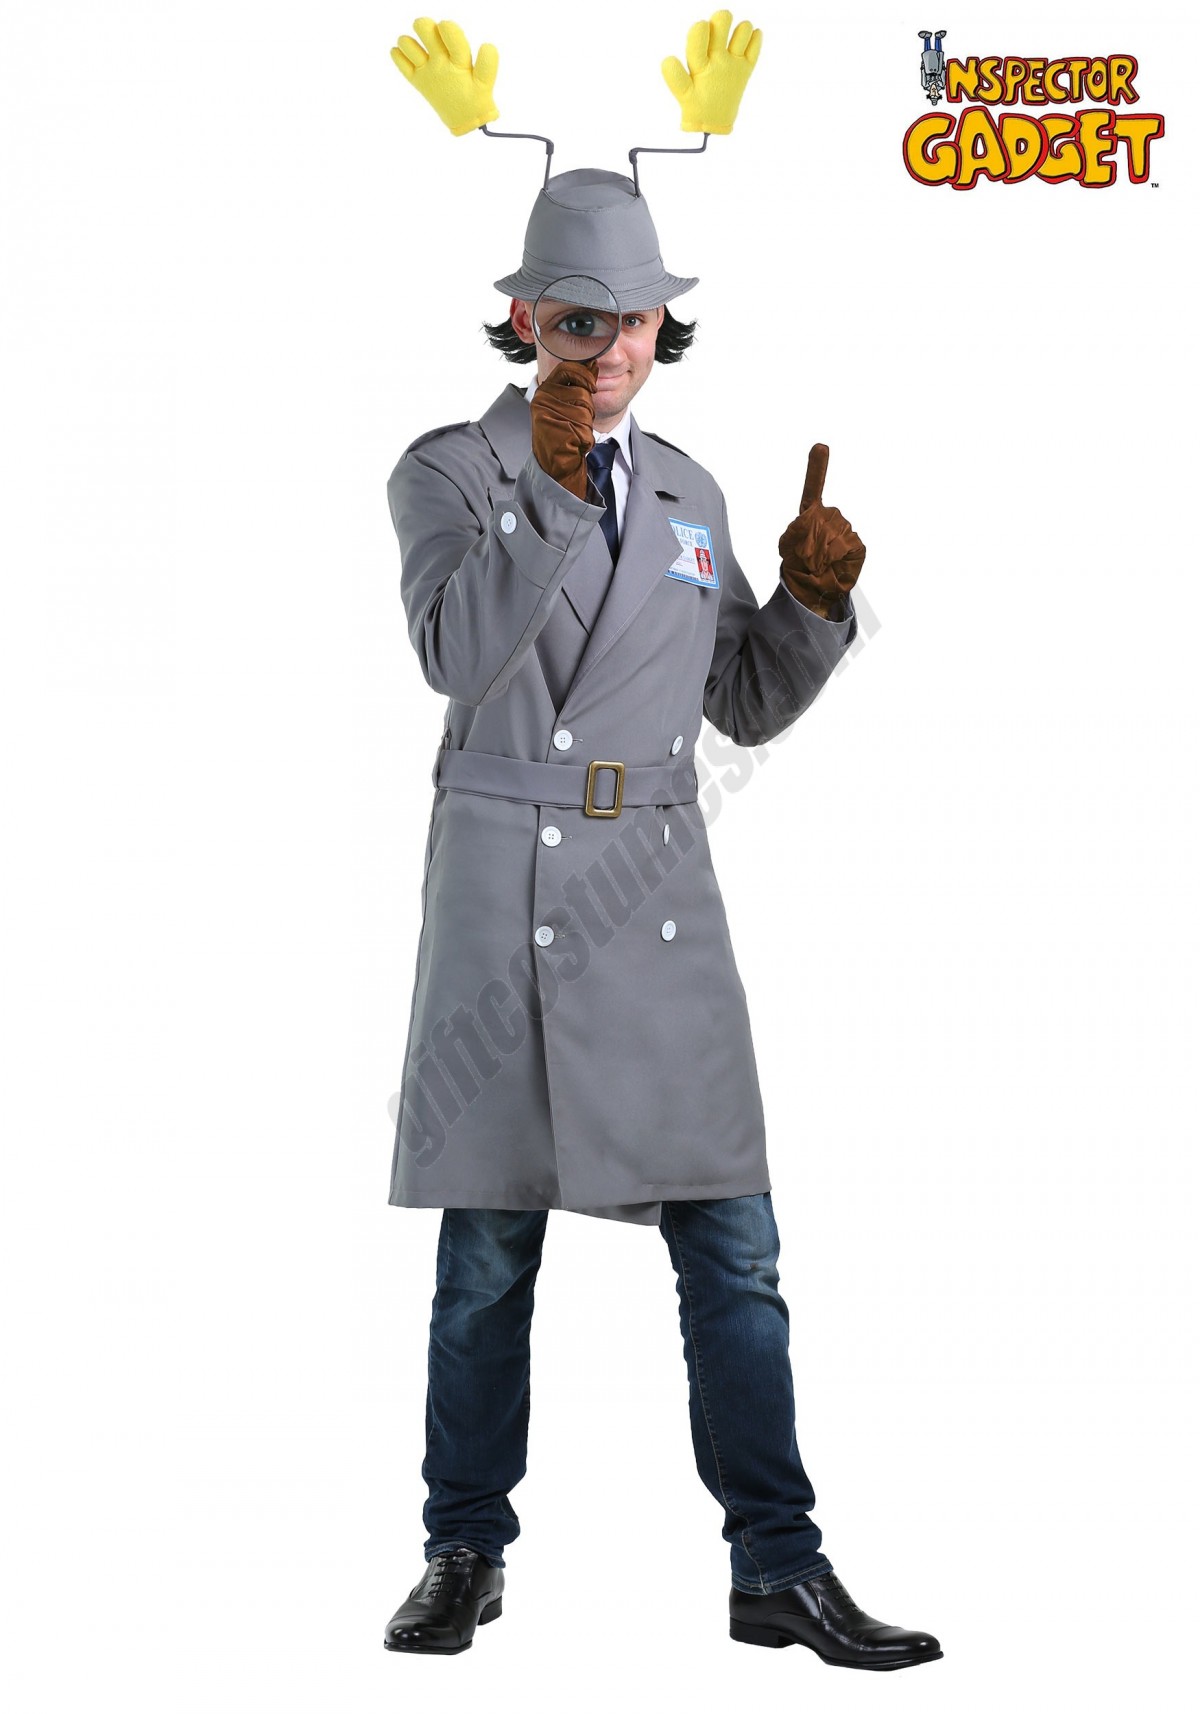  Inspector Gadget Plus Size Men's Costume Promotions - -2